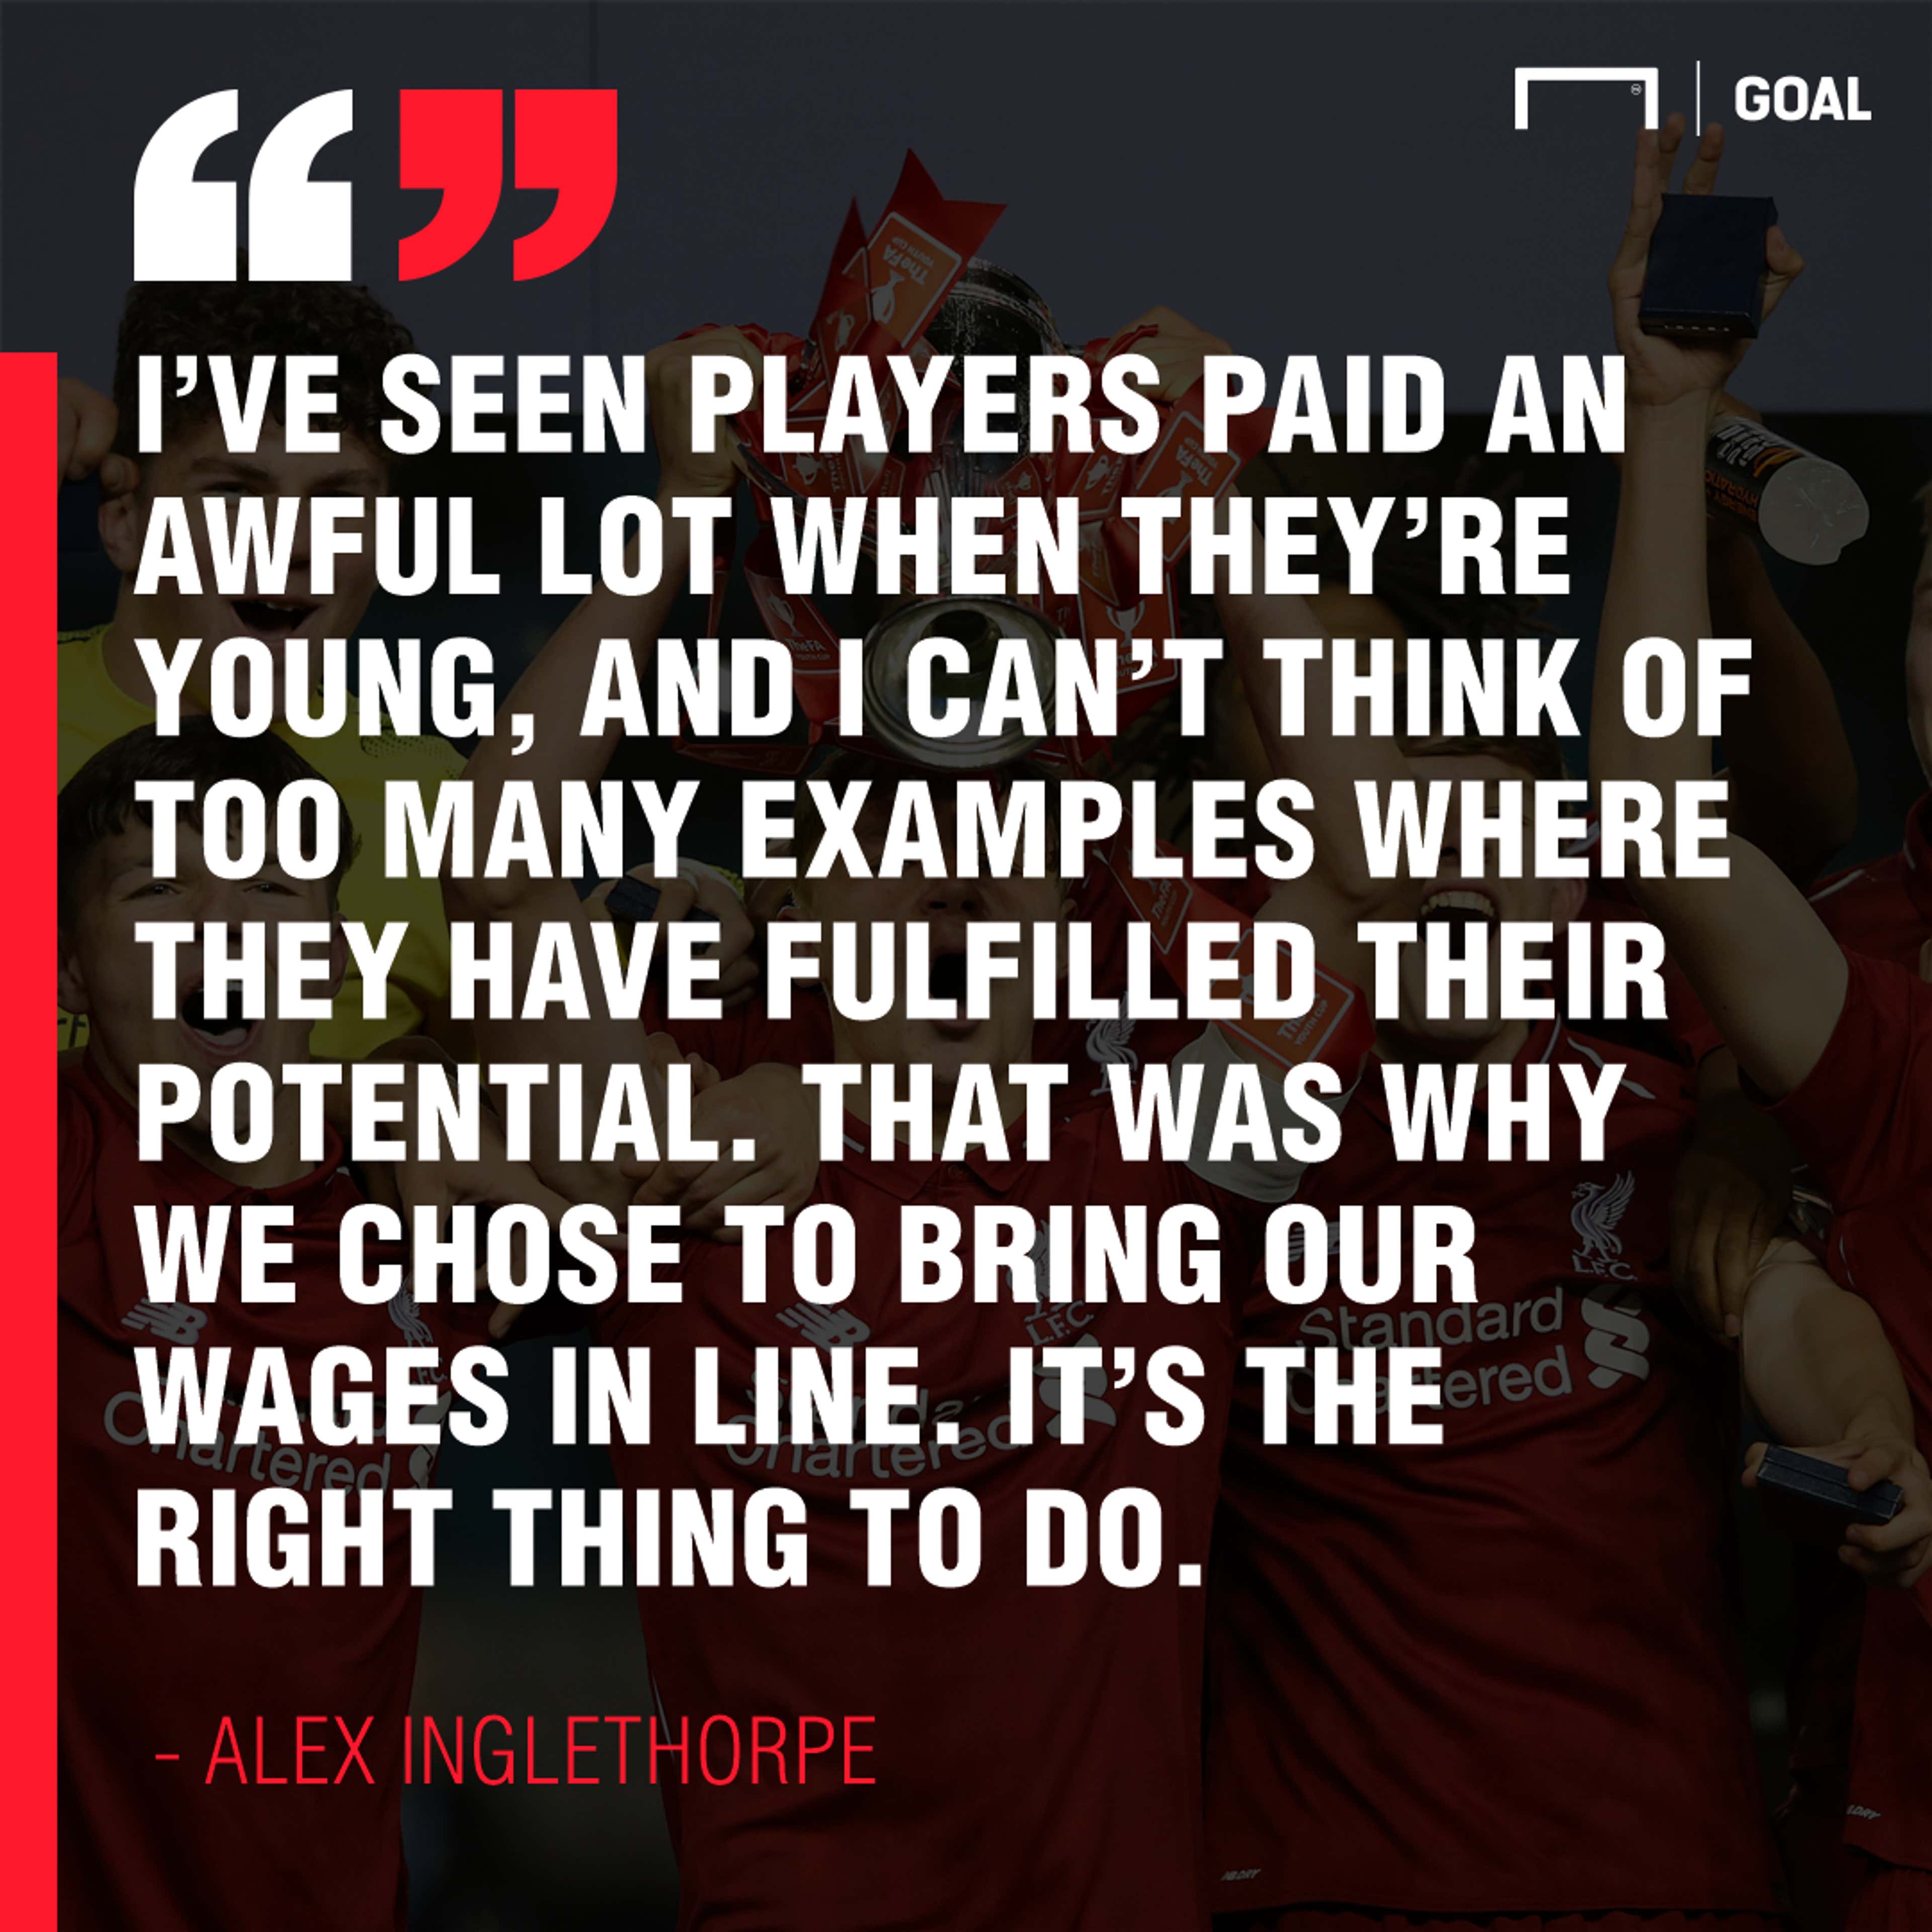 Alex Inglethorpe quote Liverpool 2019